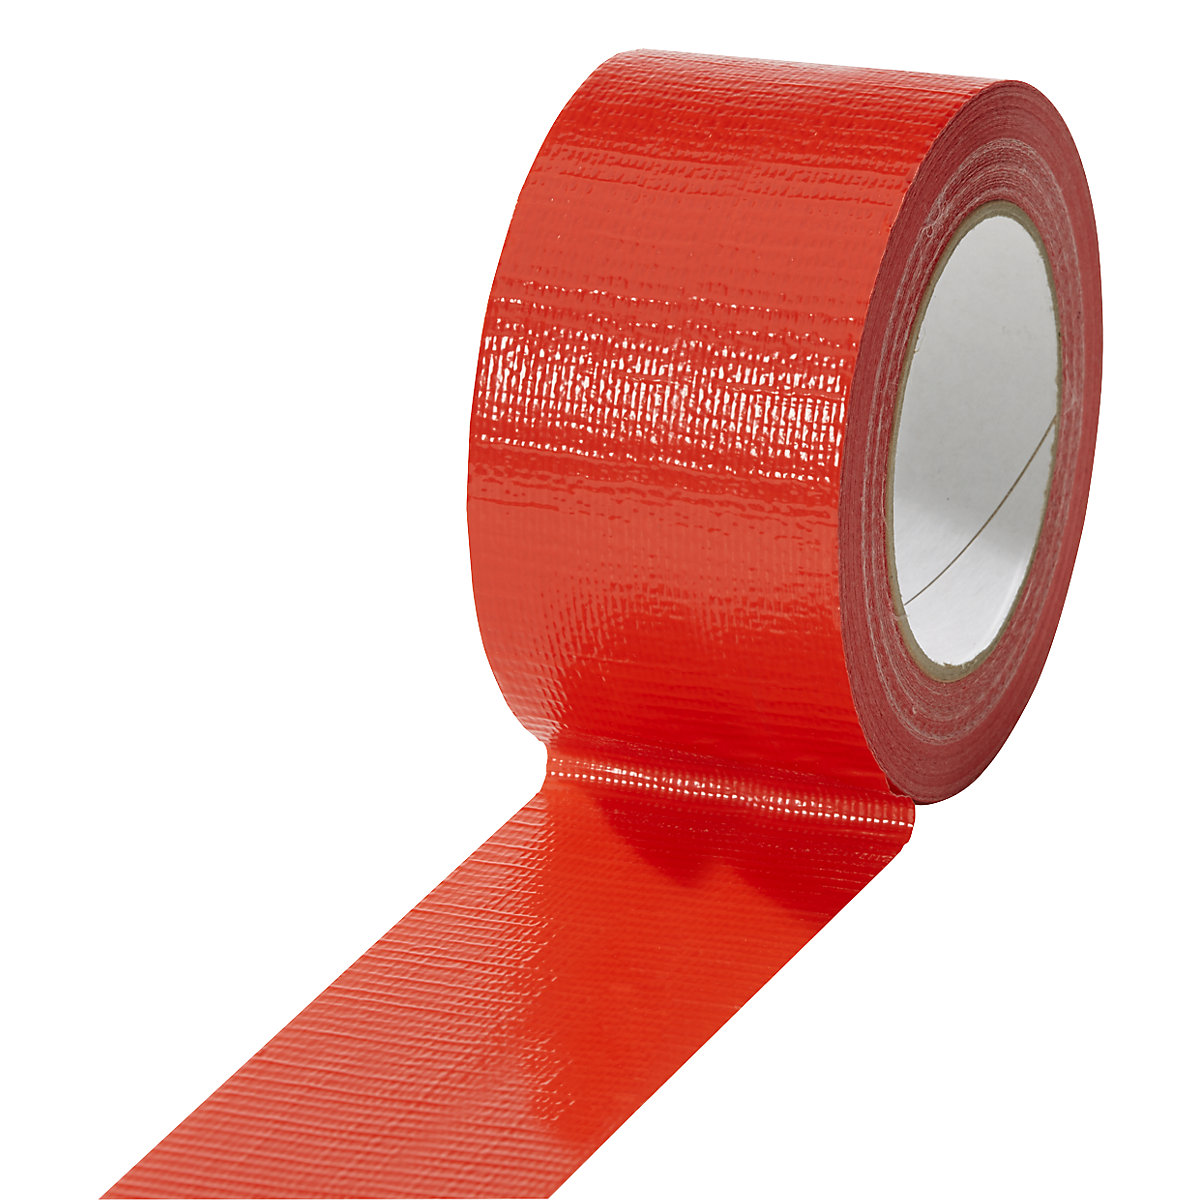 Textilná páska, v rôznych farbách, OJ 18 kotúčov, červená, šírka pásky 50 mm-19